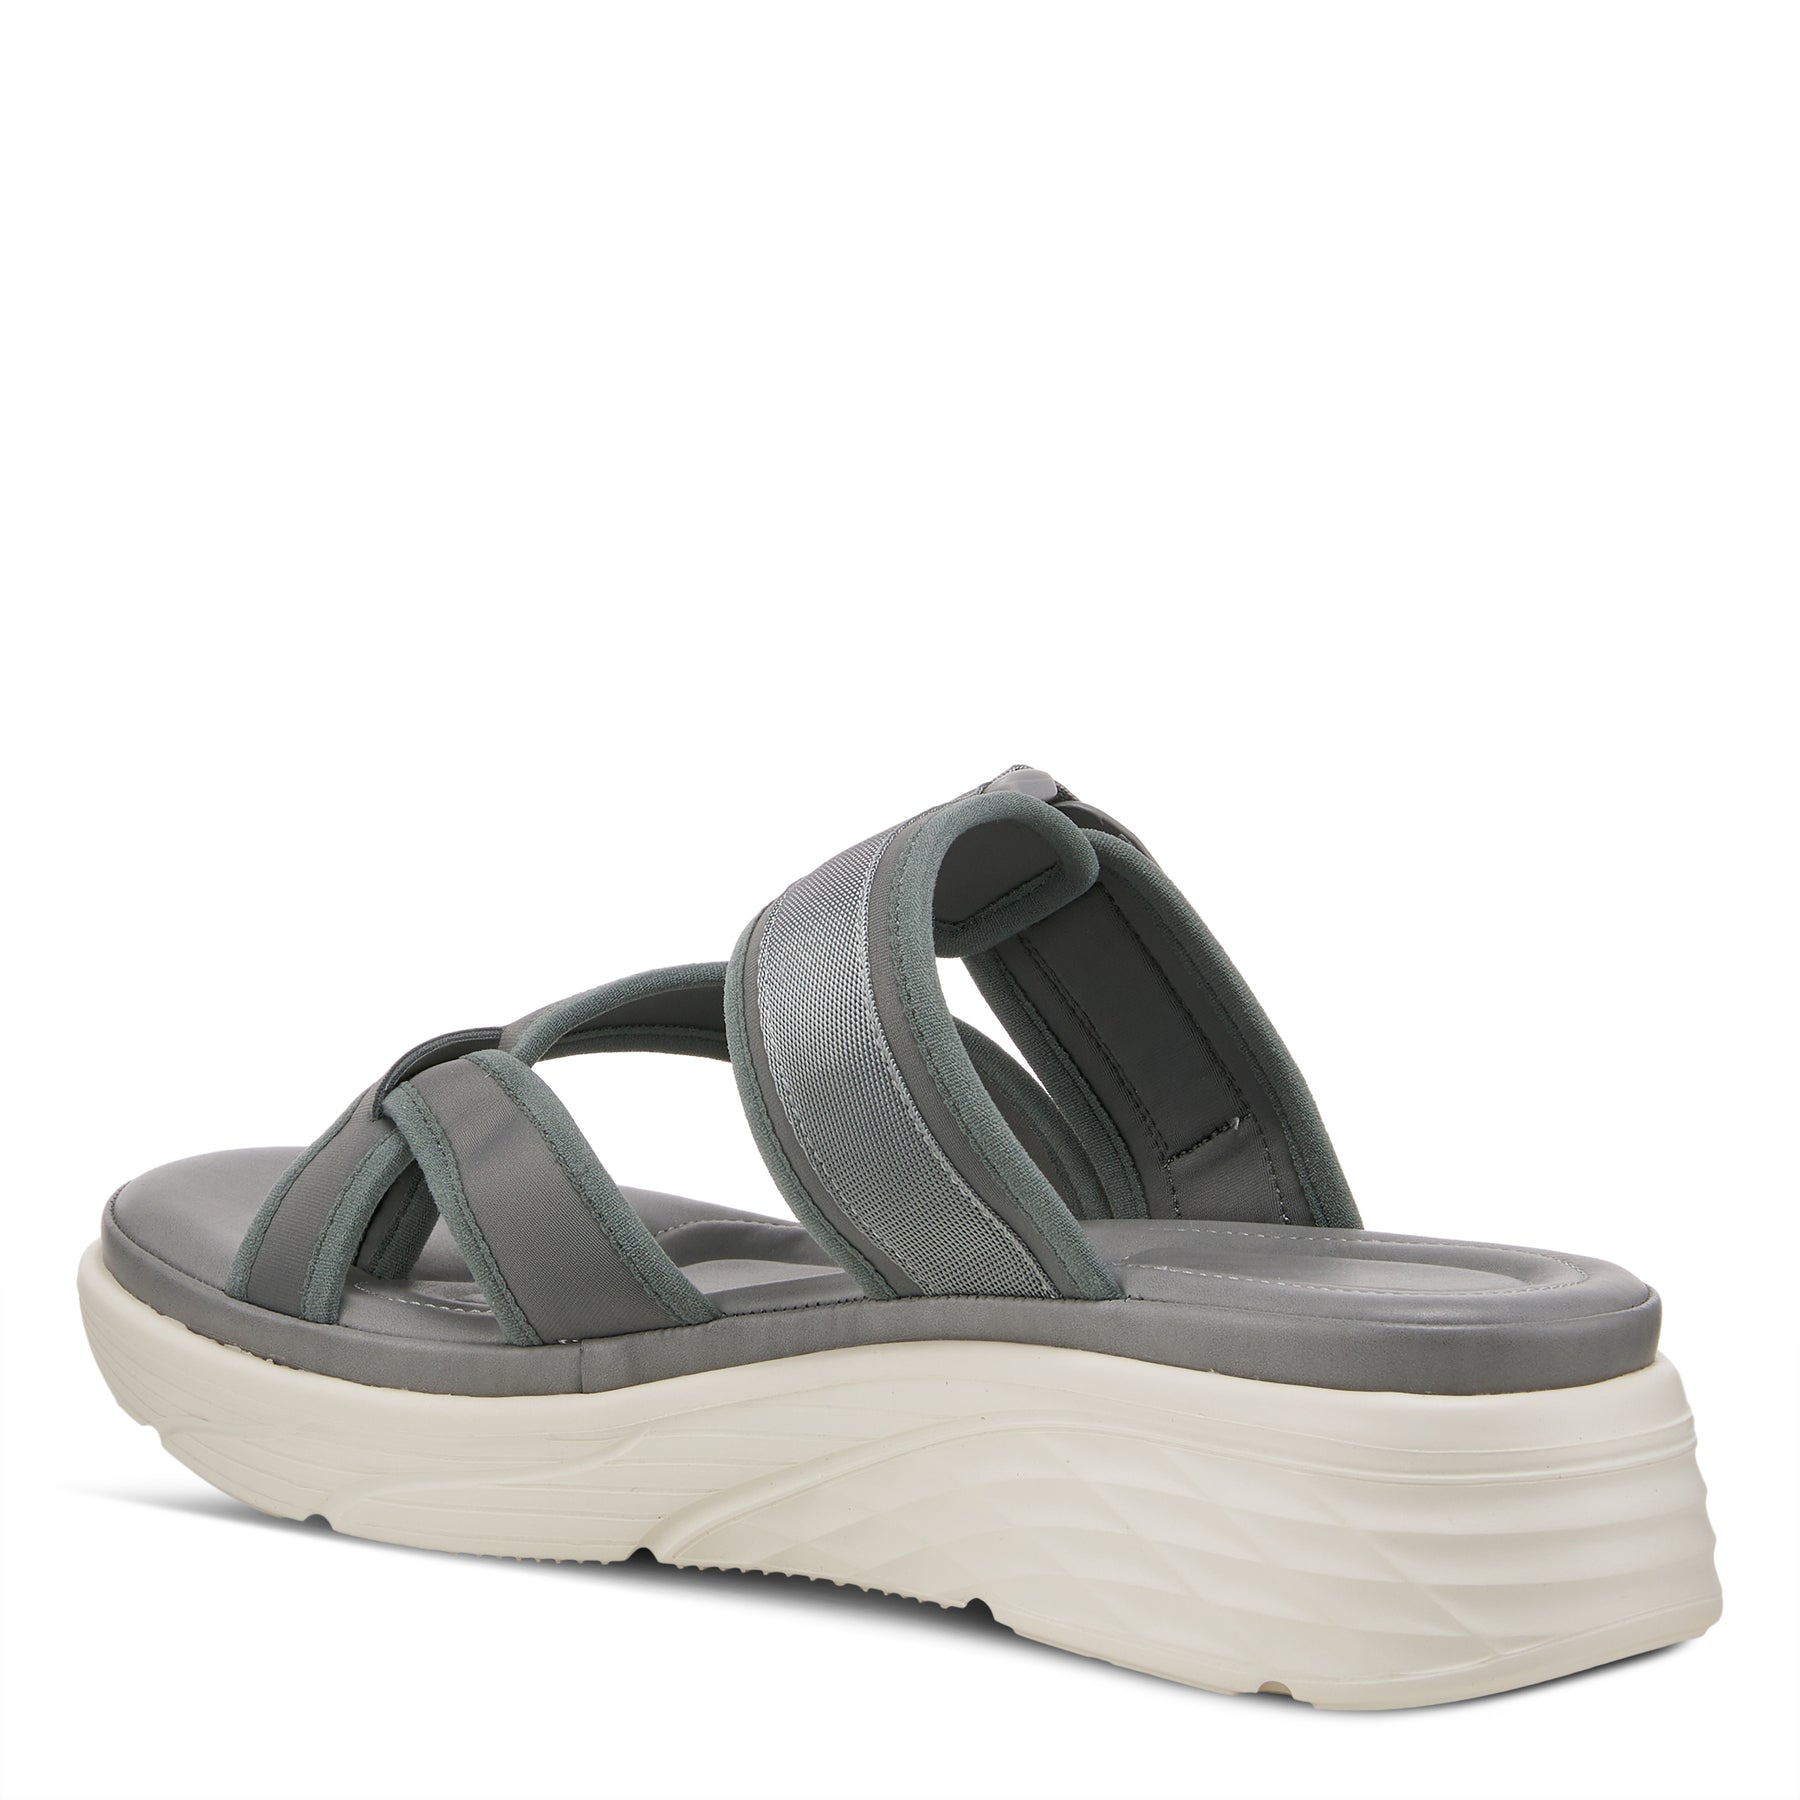 Flexus Rexie Slide Sandals: Sporty Footwear – Spring Step Shoes